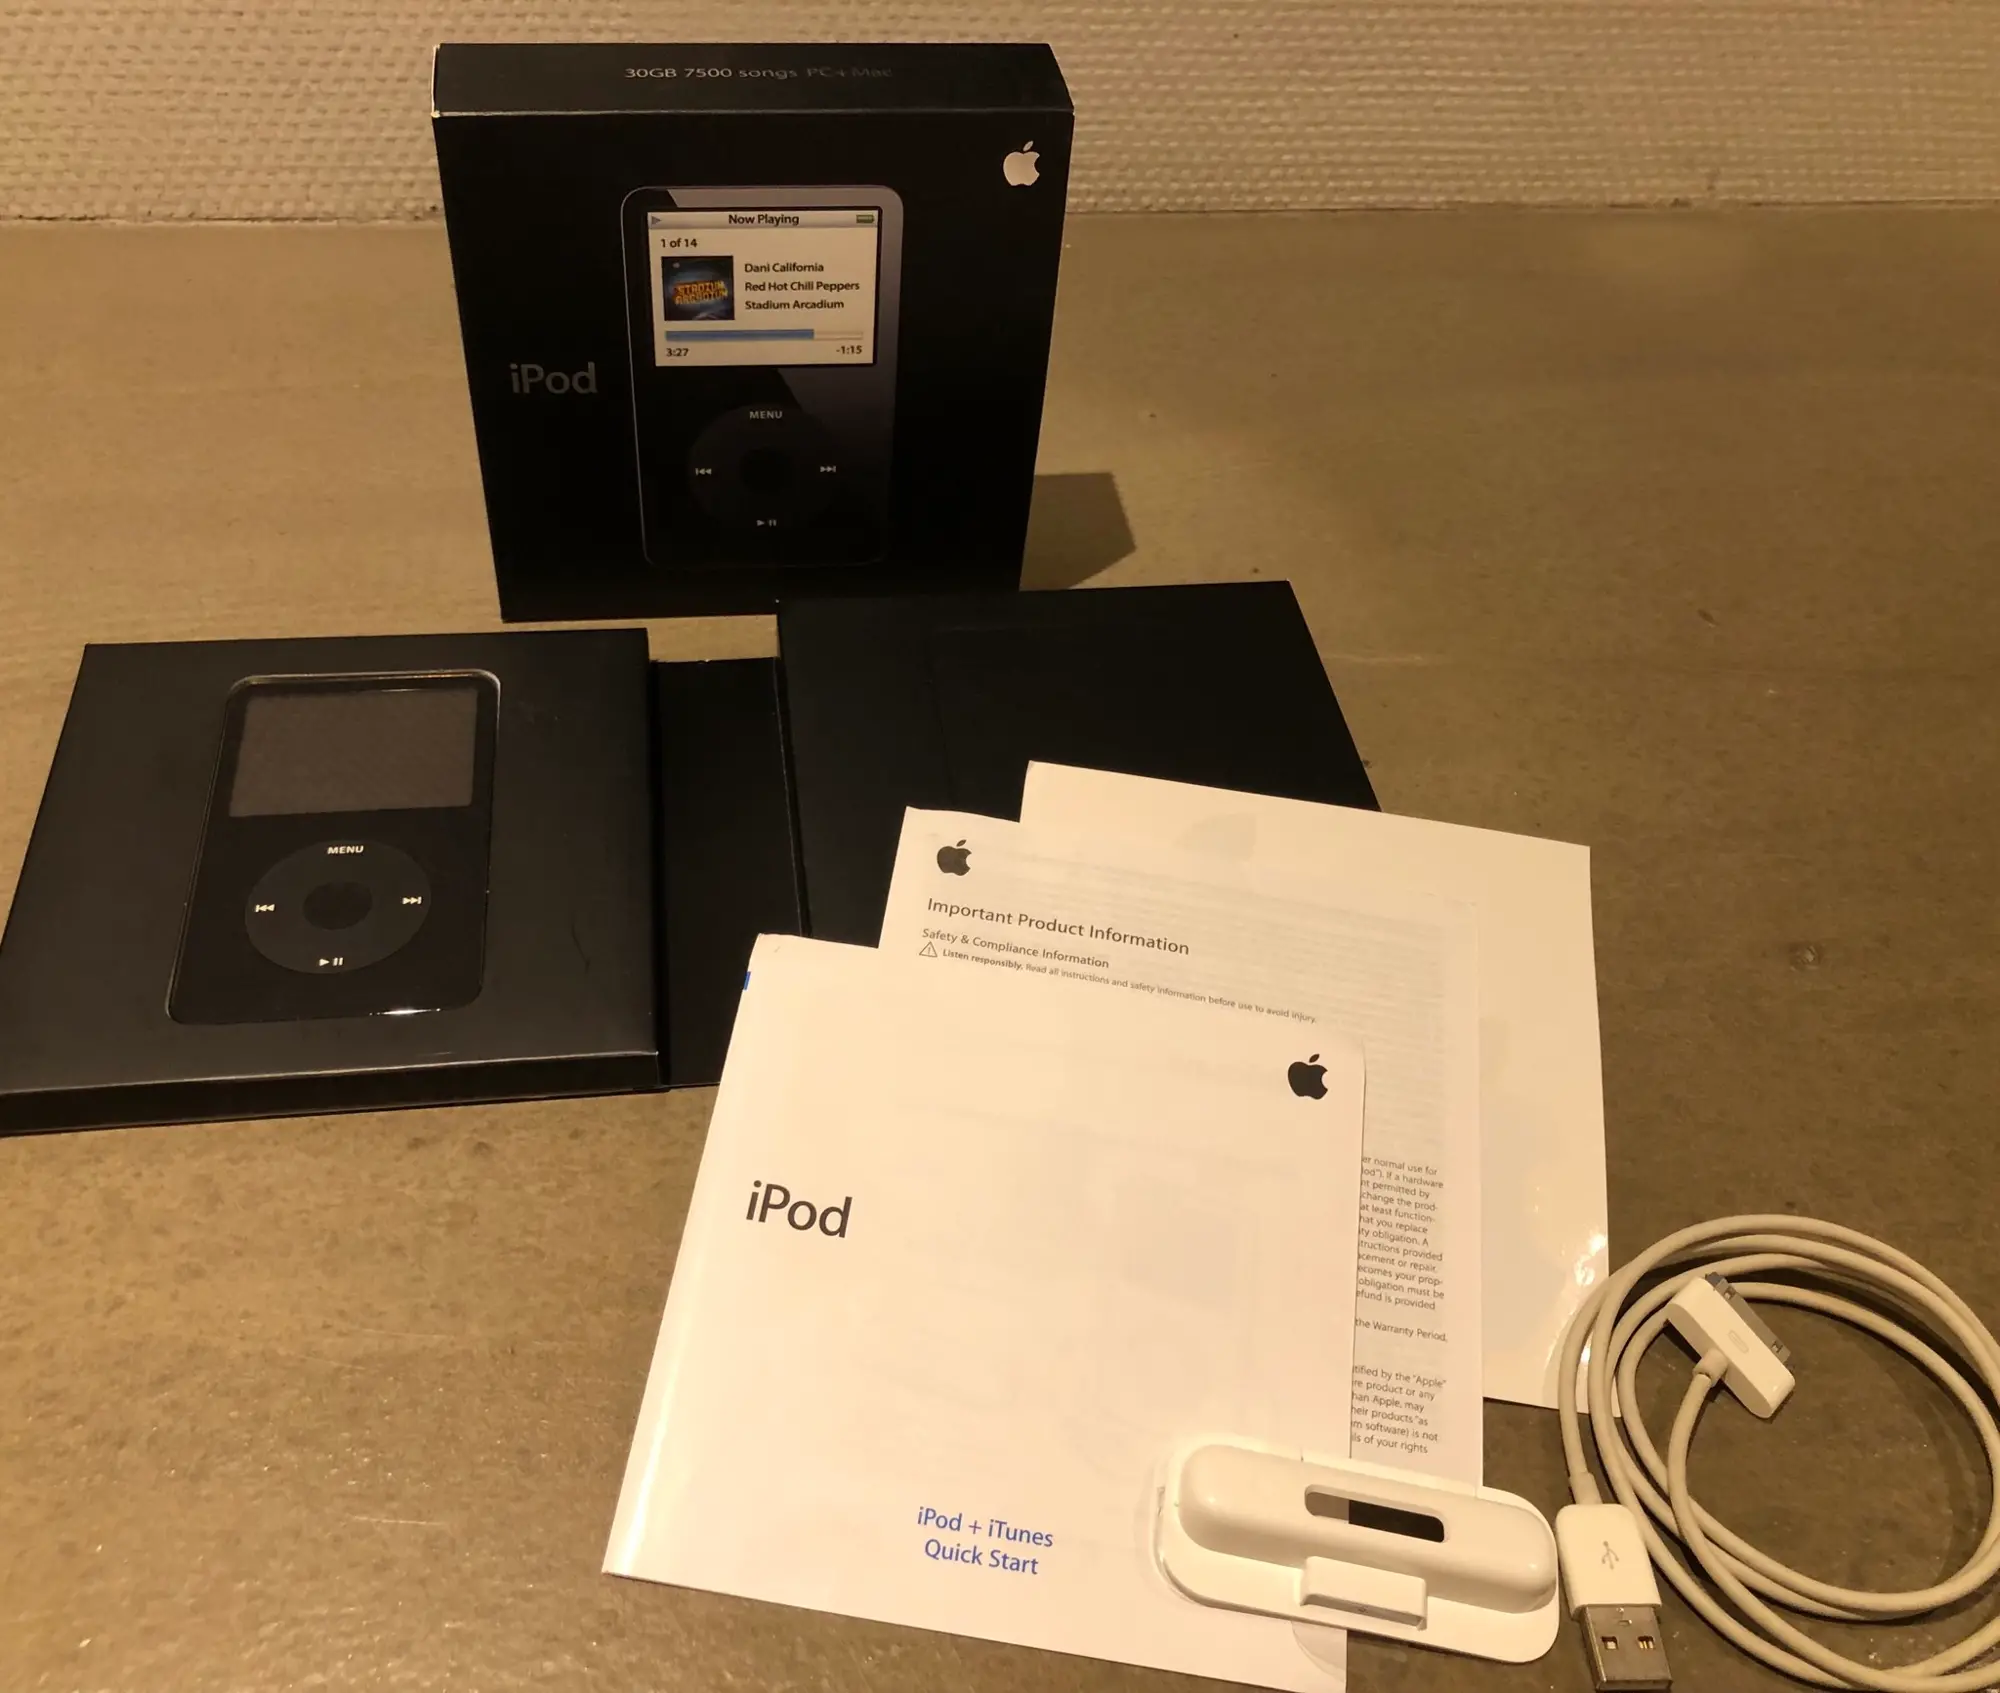 Ikonisk Apple IPod i perfekt stand Inkl original emballage  originalt produktblad lader og holder 
Efterspurgt samle objekt eller total analog original lydoplevelse :-) 
BYD!